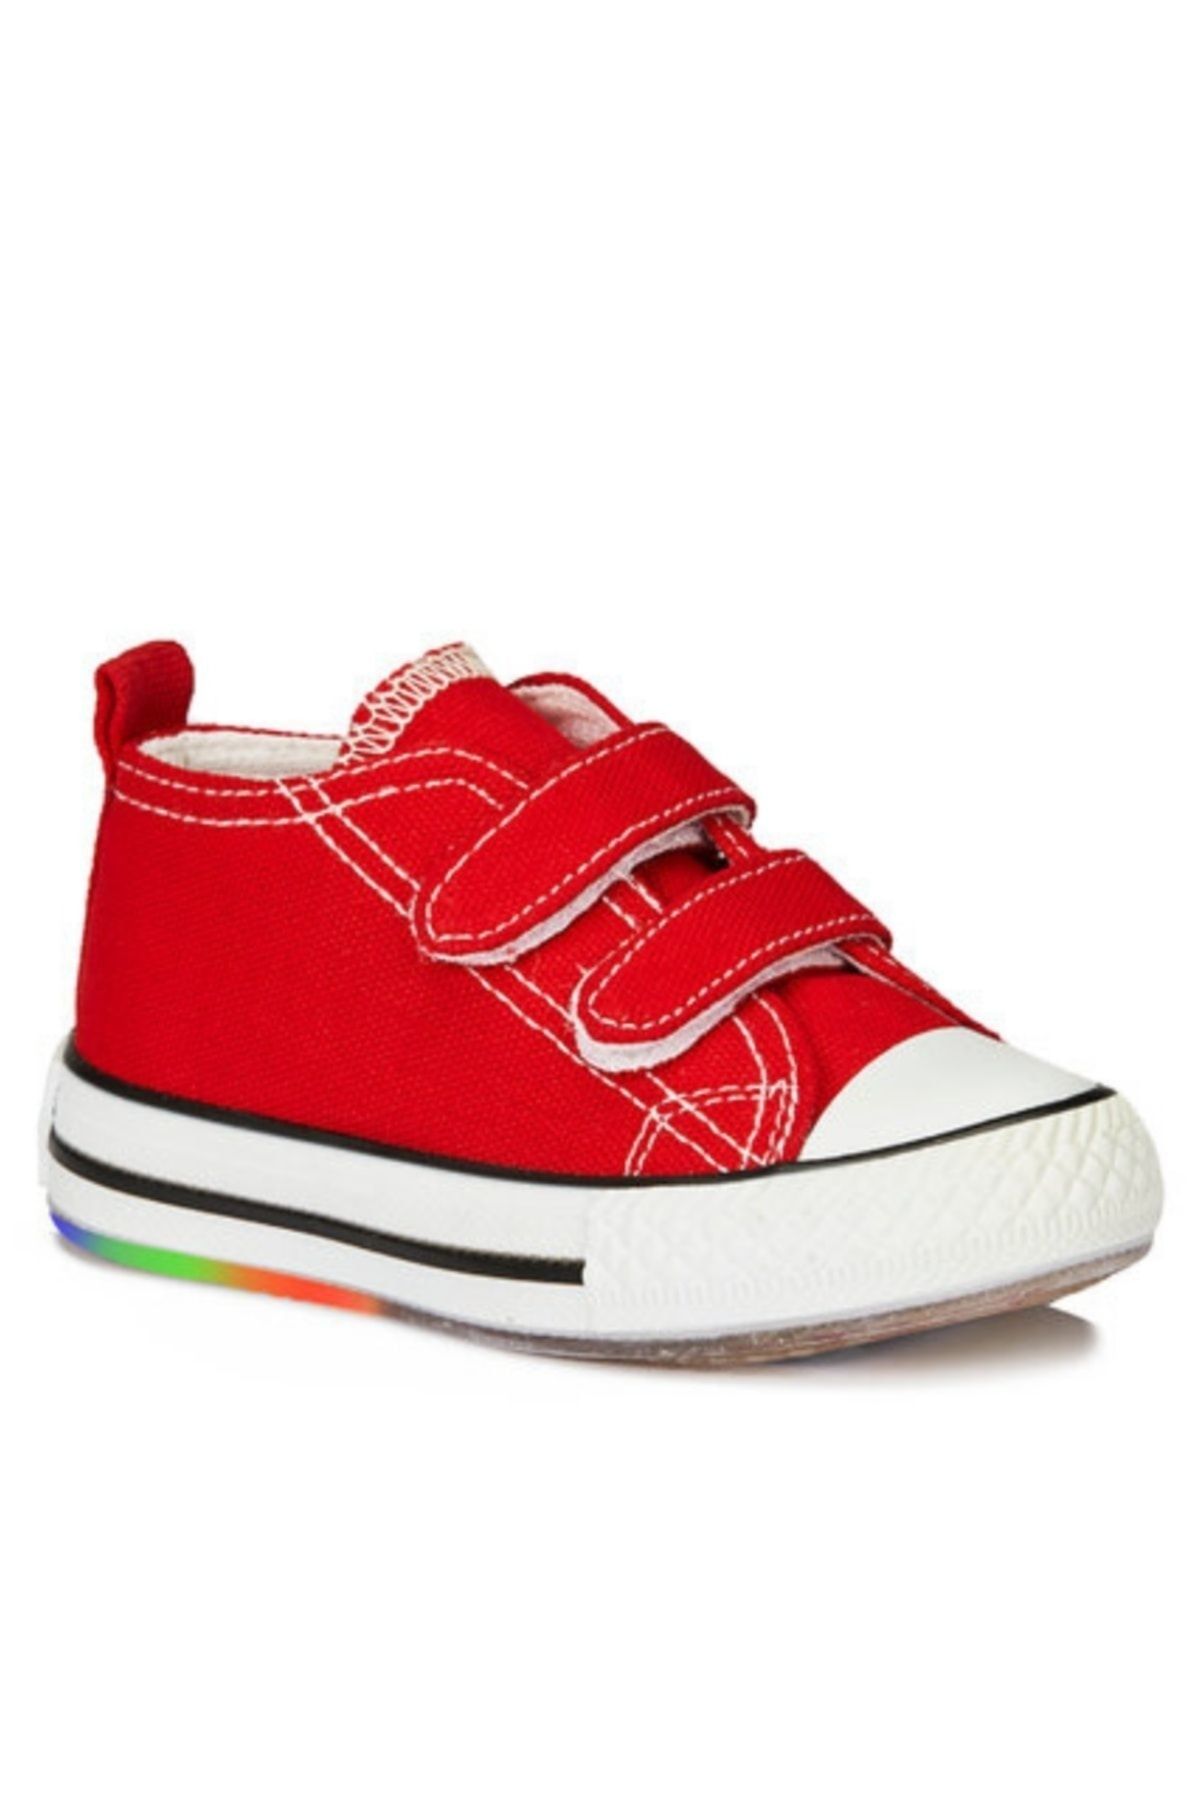 Vicco Pino Kız/erkek Çocuk Işıklı Kırmızı Sneaker Bebe Patik Spor Ayakkabı 925.p20y.150 / 925.b20y.150(16)